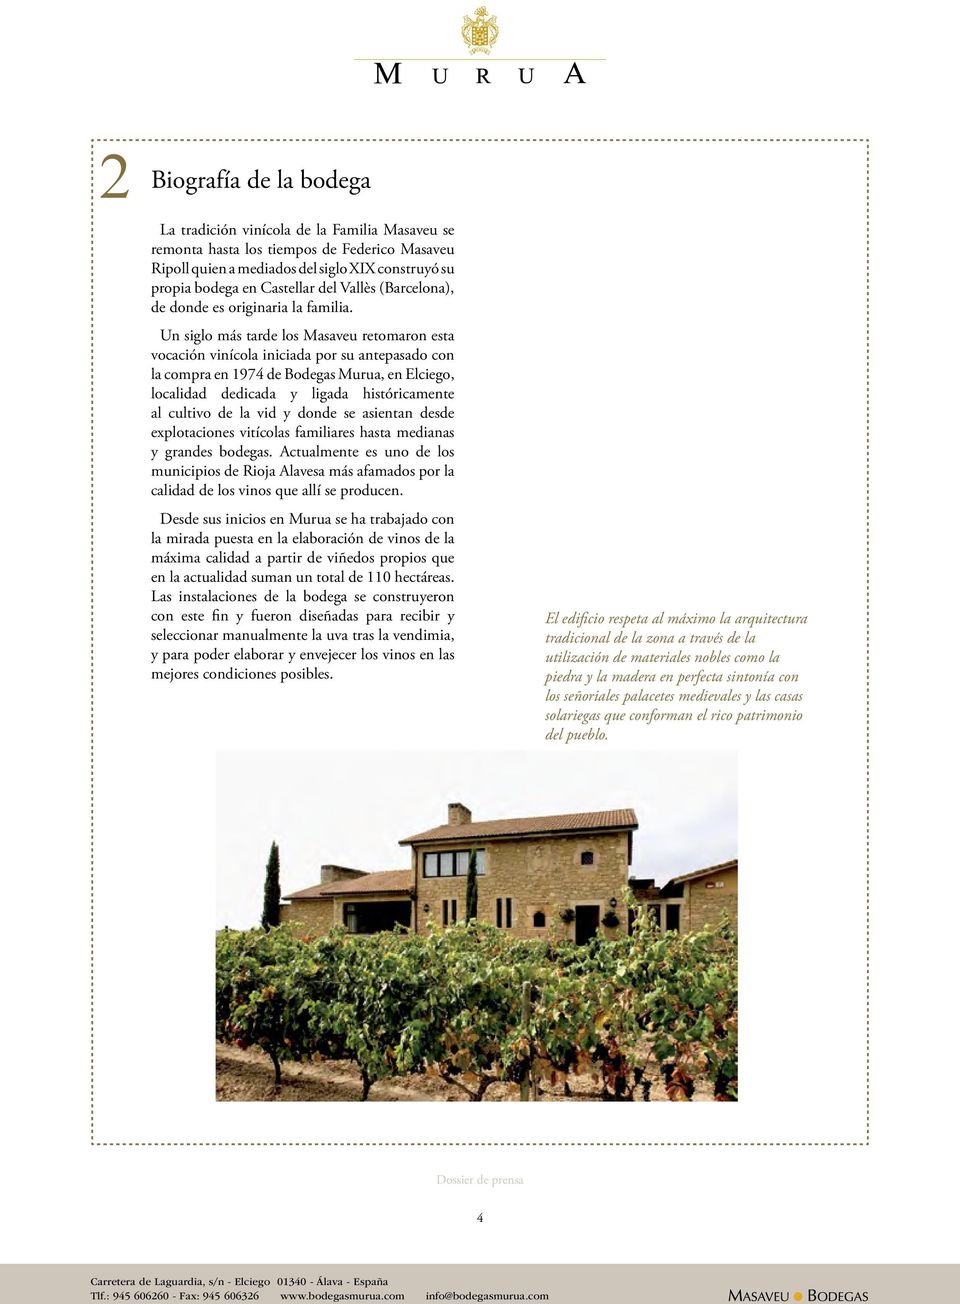 Un siglo más tarde los Masaveu retomaron esta vocación vinícola iniciada por su antepasado con la compra en 1974 de Bodegas Murua, en Elciego, localidad dedicada y ligada históricamente al cultivo de